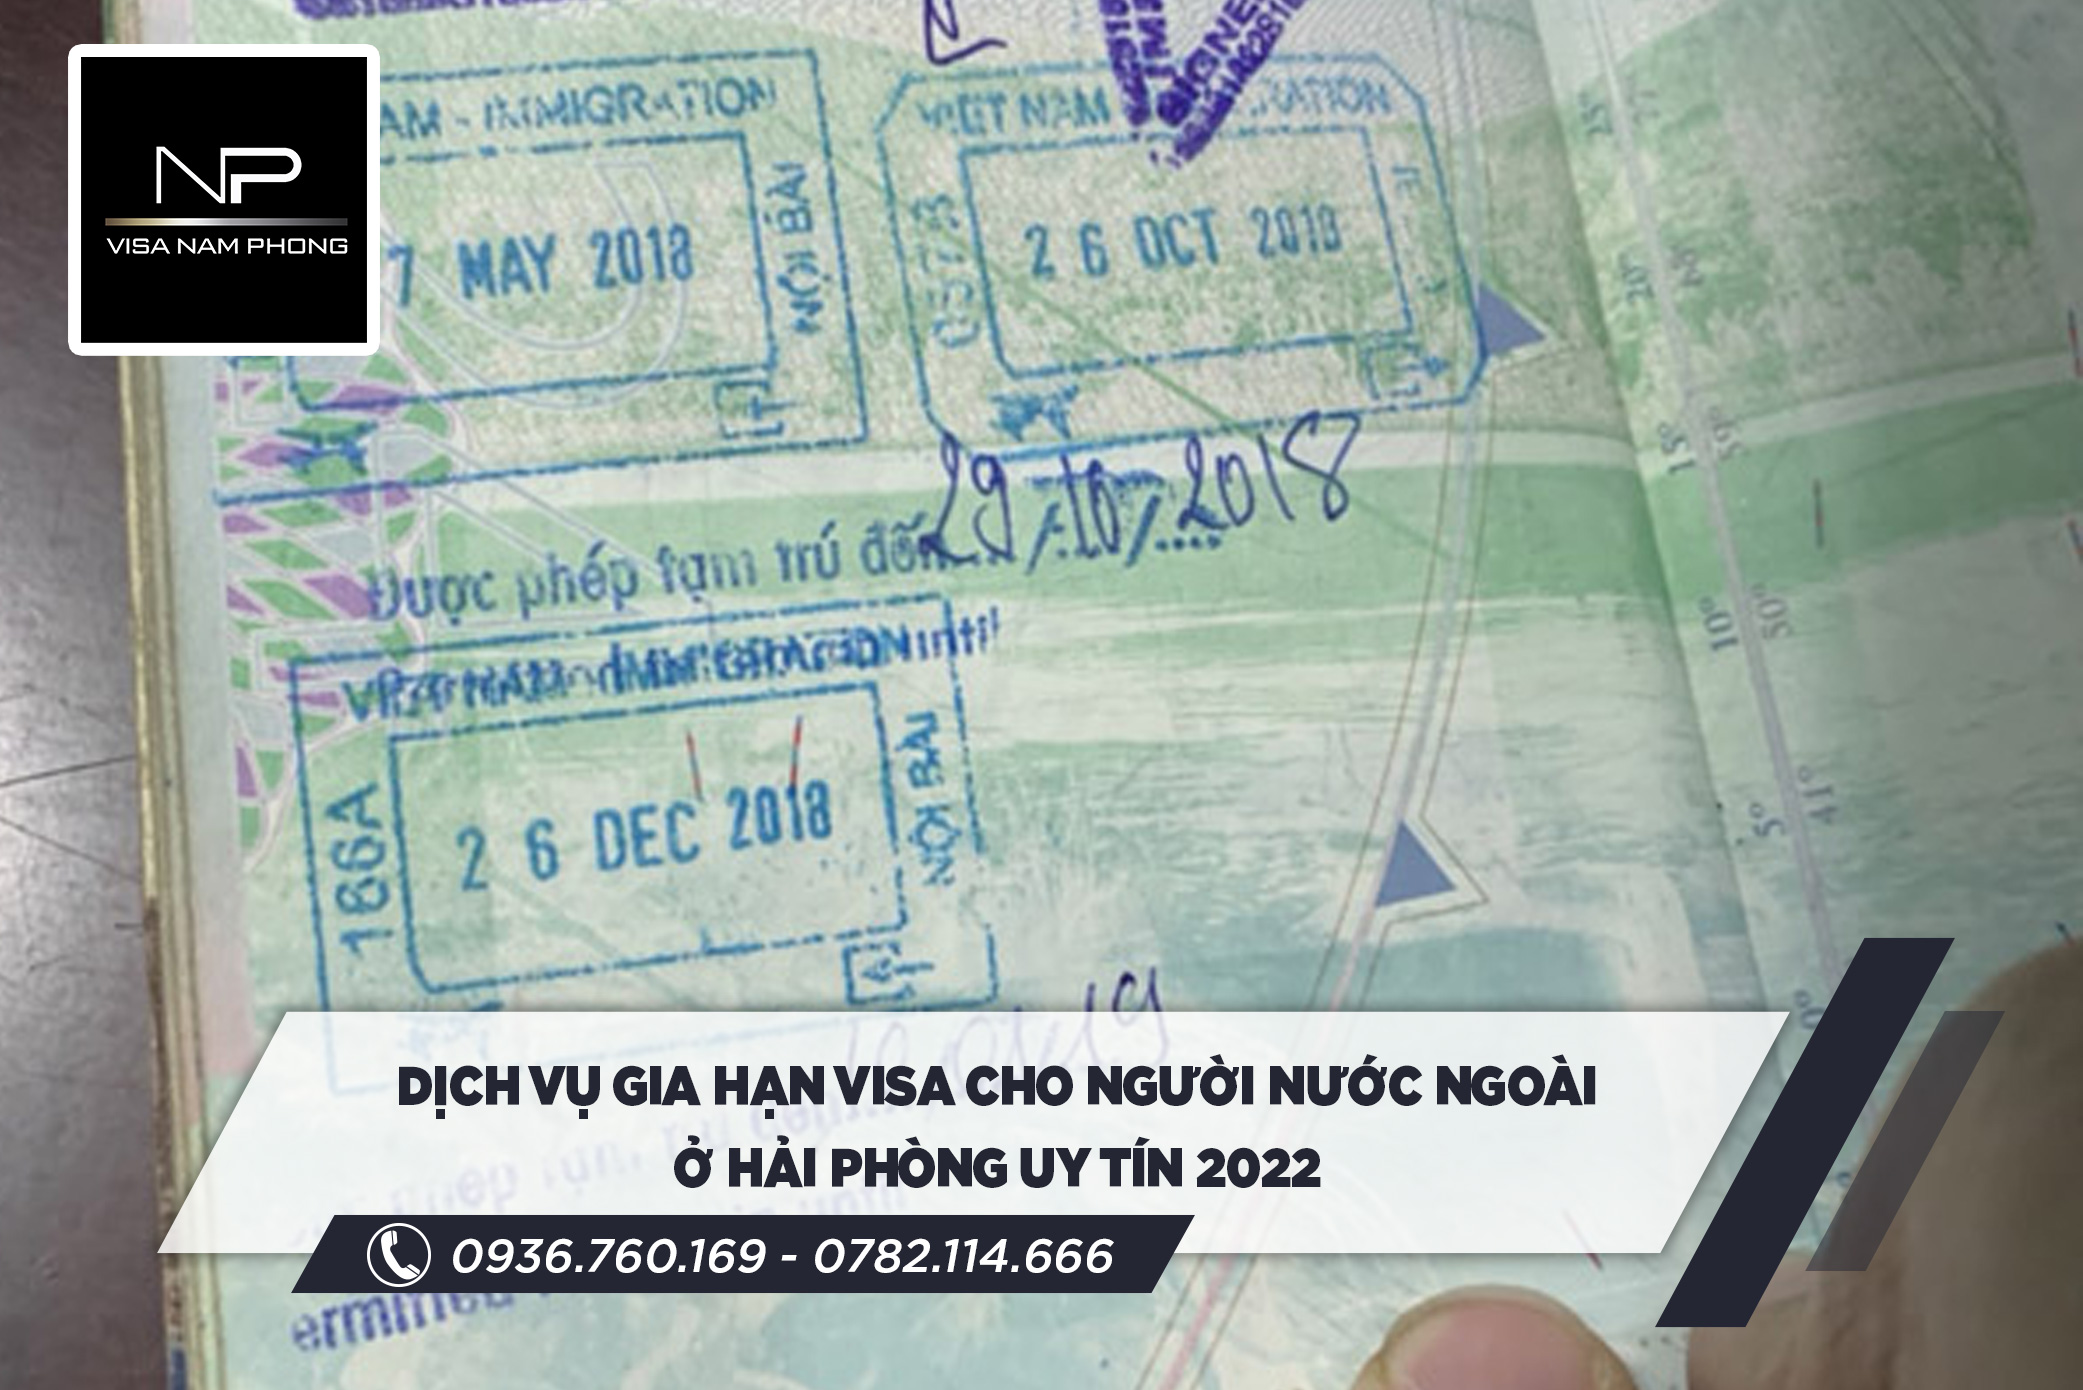 Dịch vụ gia hạn visa cho người nước ngoài ở Hải Phòng uy tín 2022